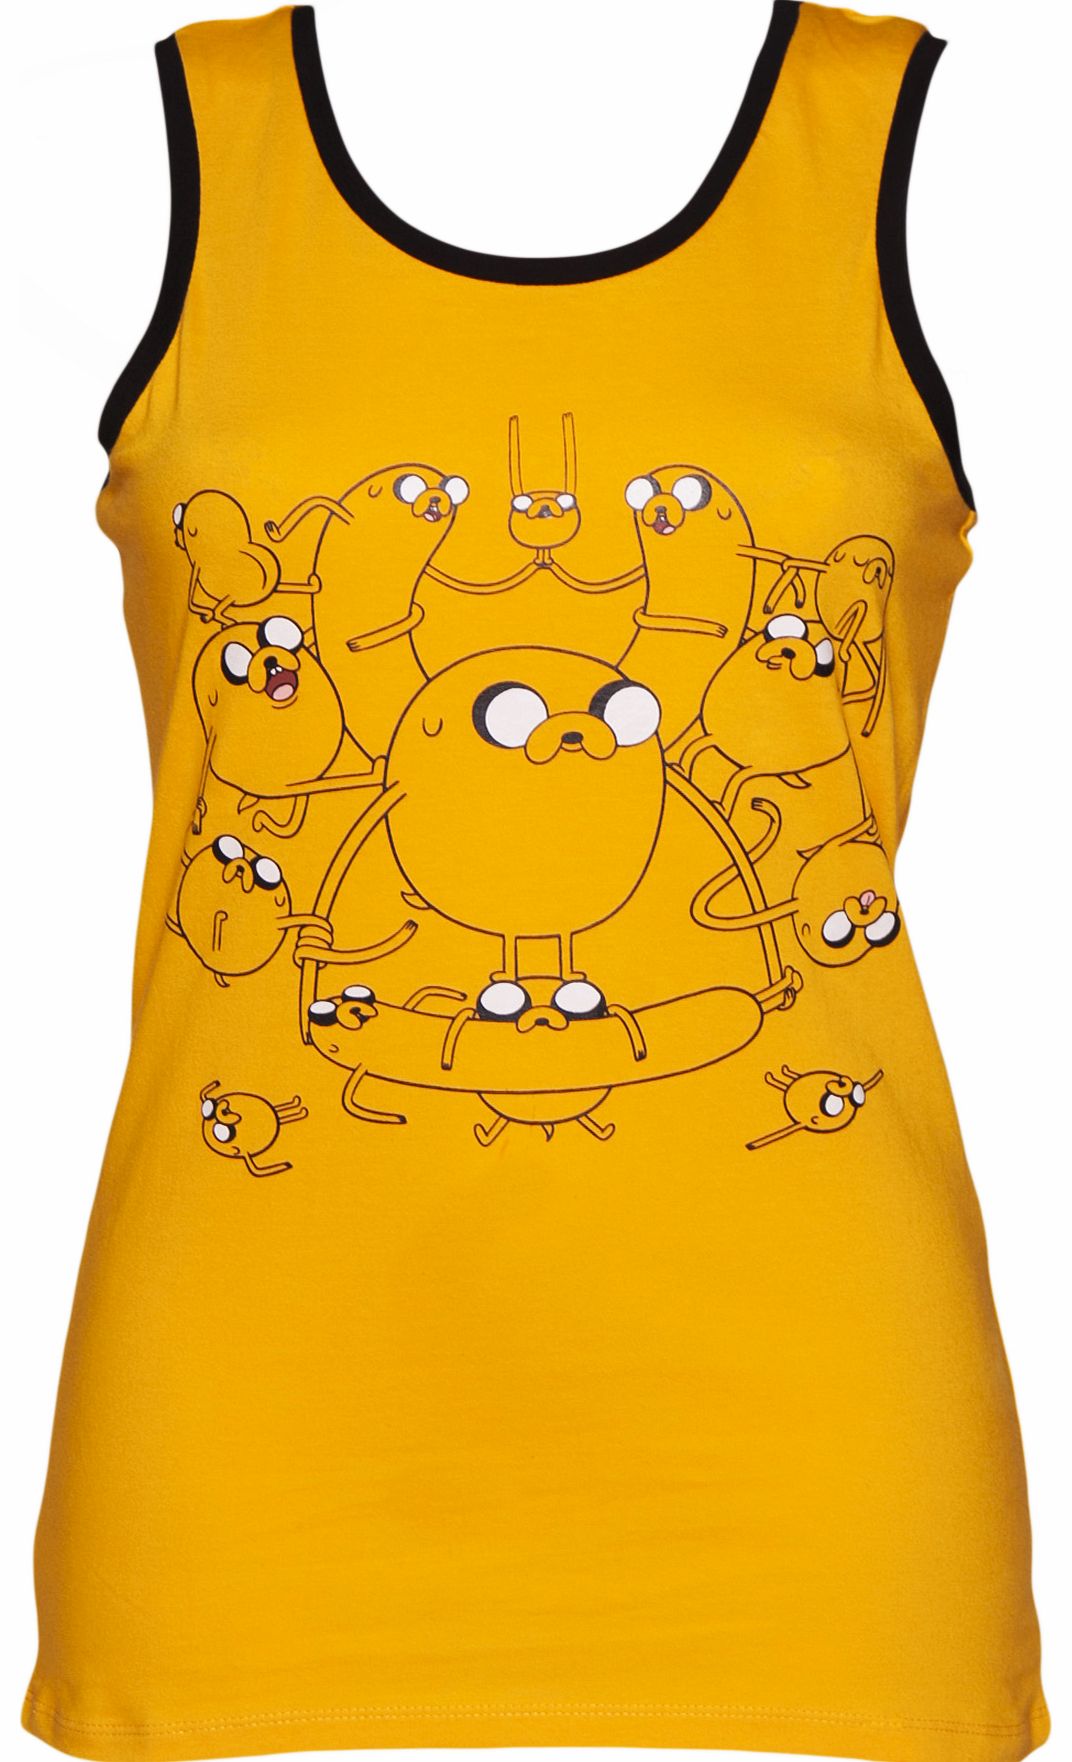 Yellow Adventure Time Vest